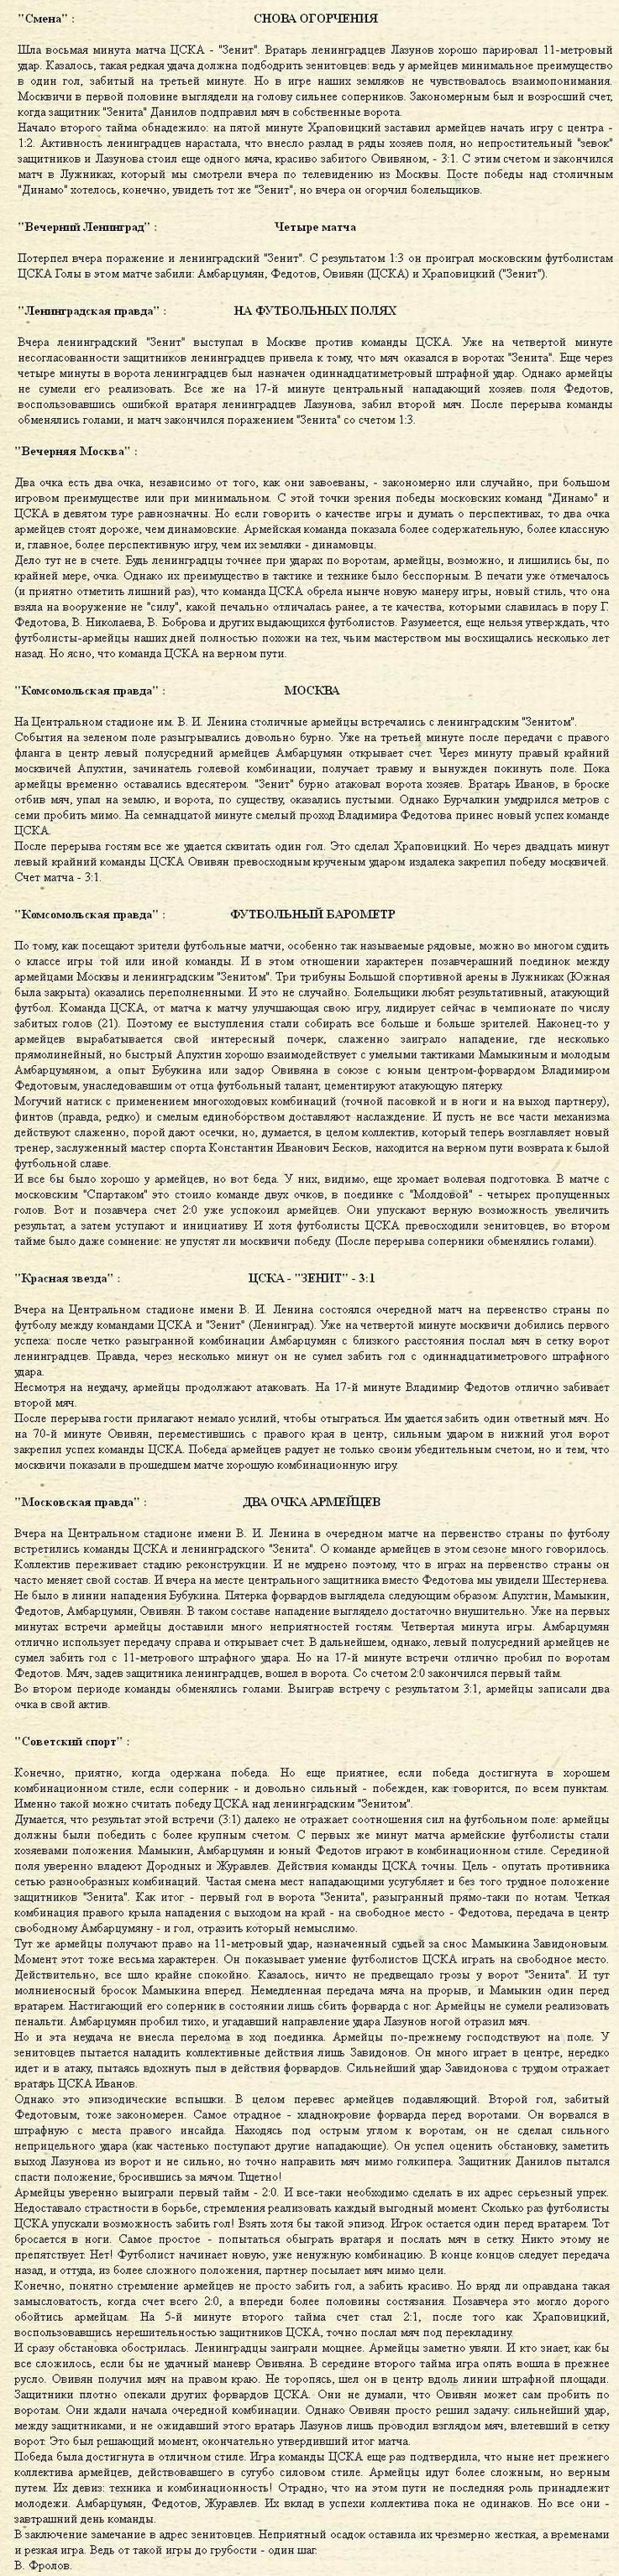 1961-05-25.CSKA-Zenit